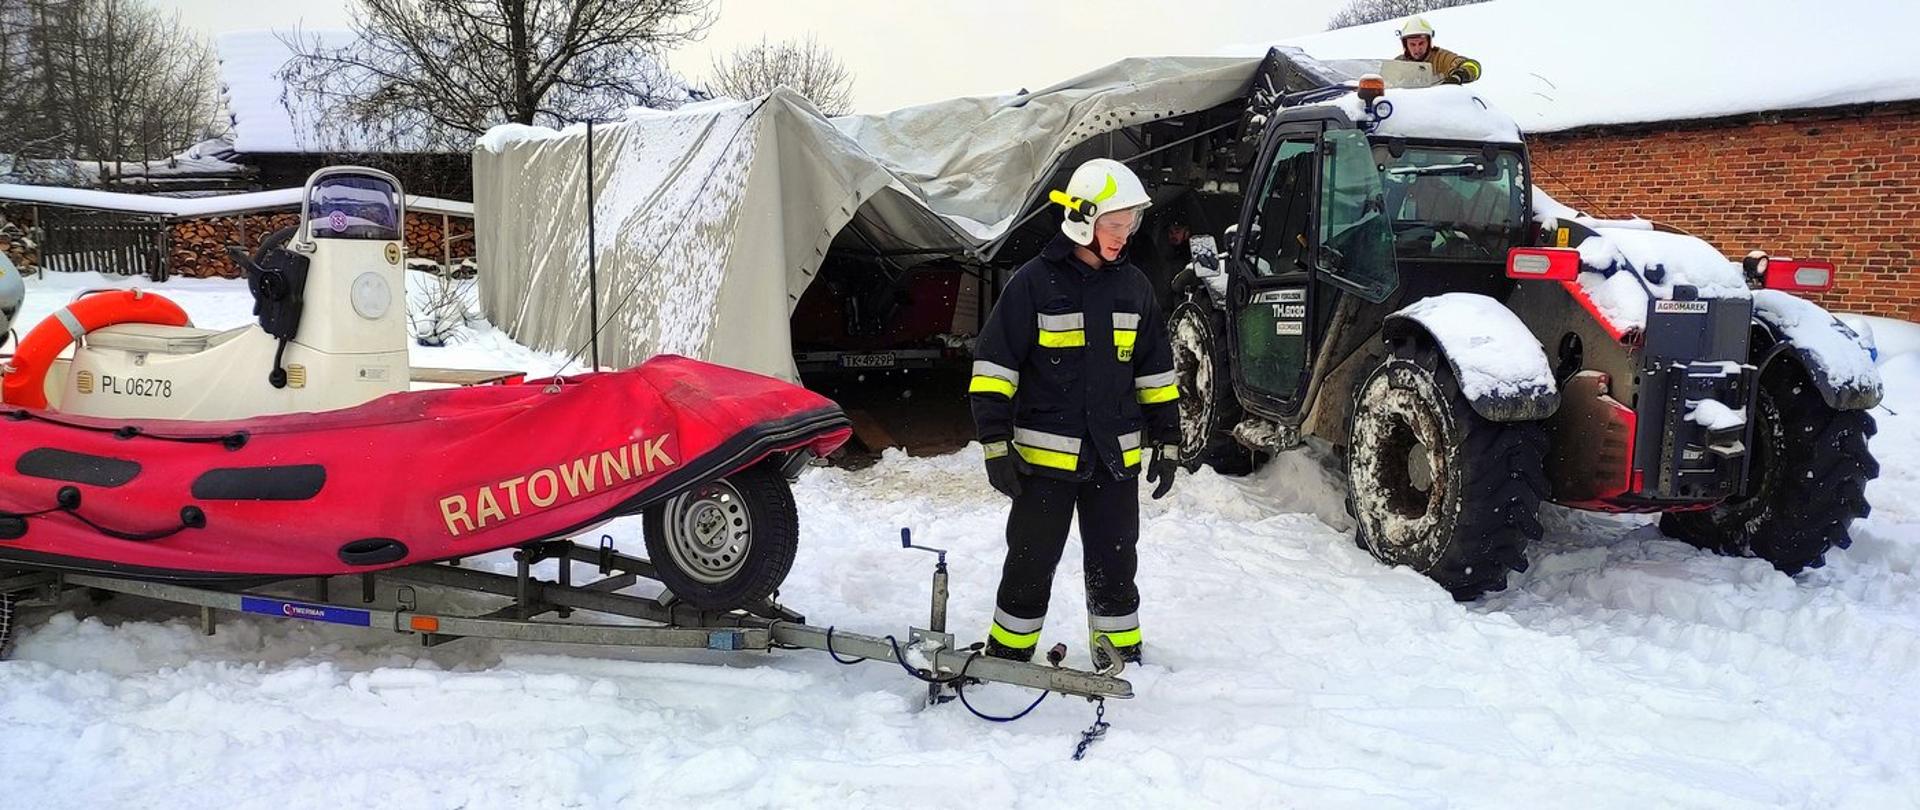 Zdjęcie wykonane na zewnątrz. Po lewej stronie, na przyczepie motorowa Łódź ratownicza z napisem "ratownik". Obok przyczepy stoi strażak. W tle widać namiot, który zawalił się pod naporem śniegu. 